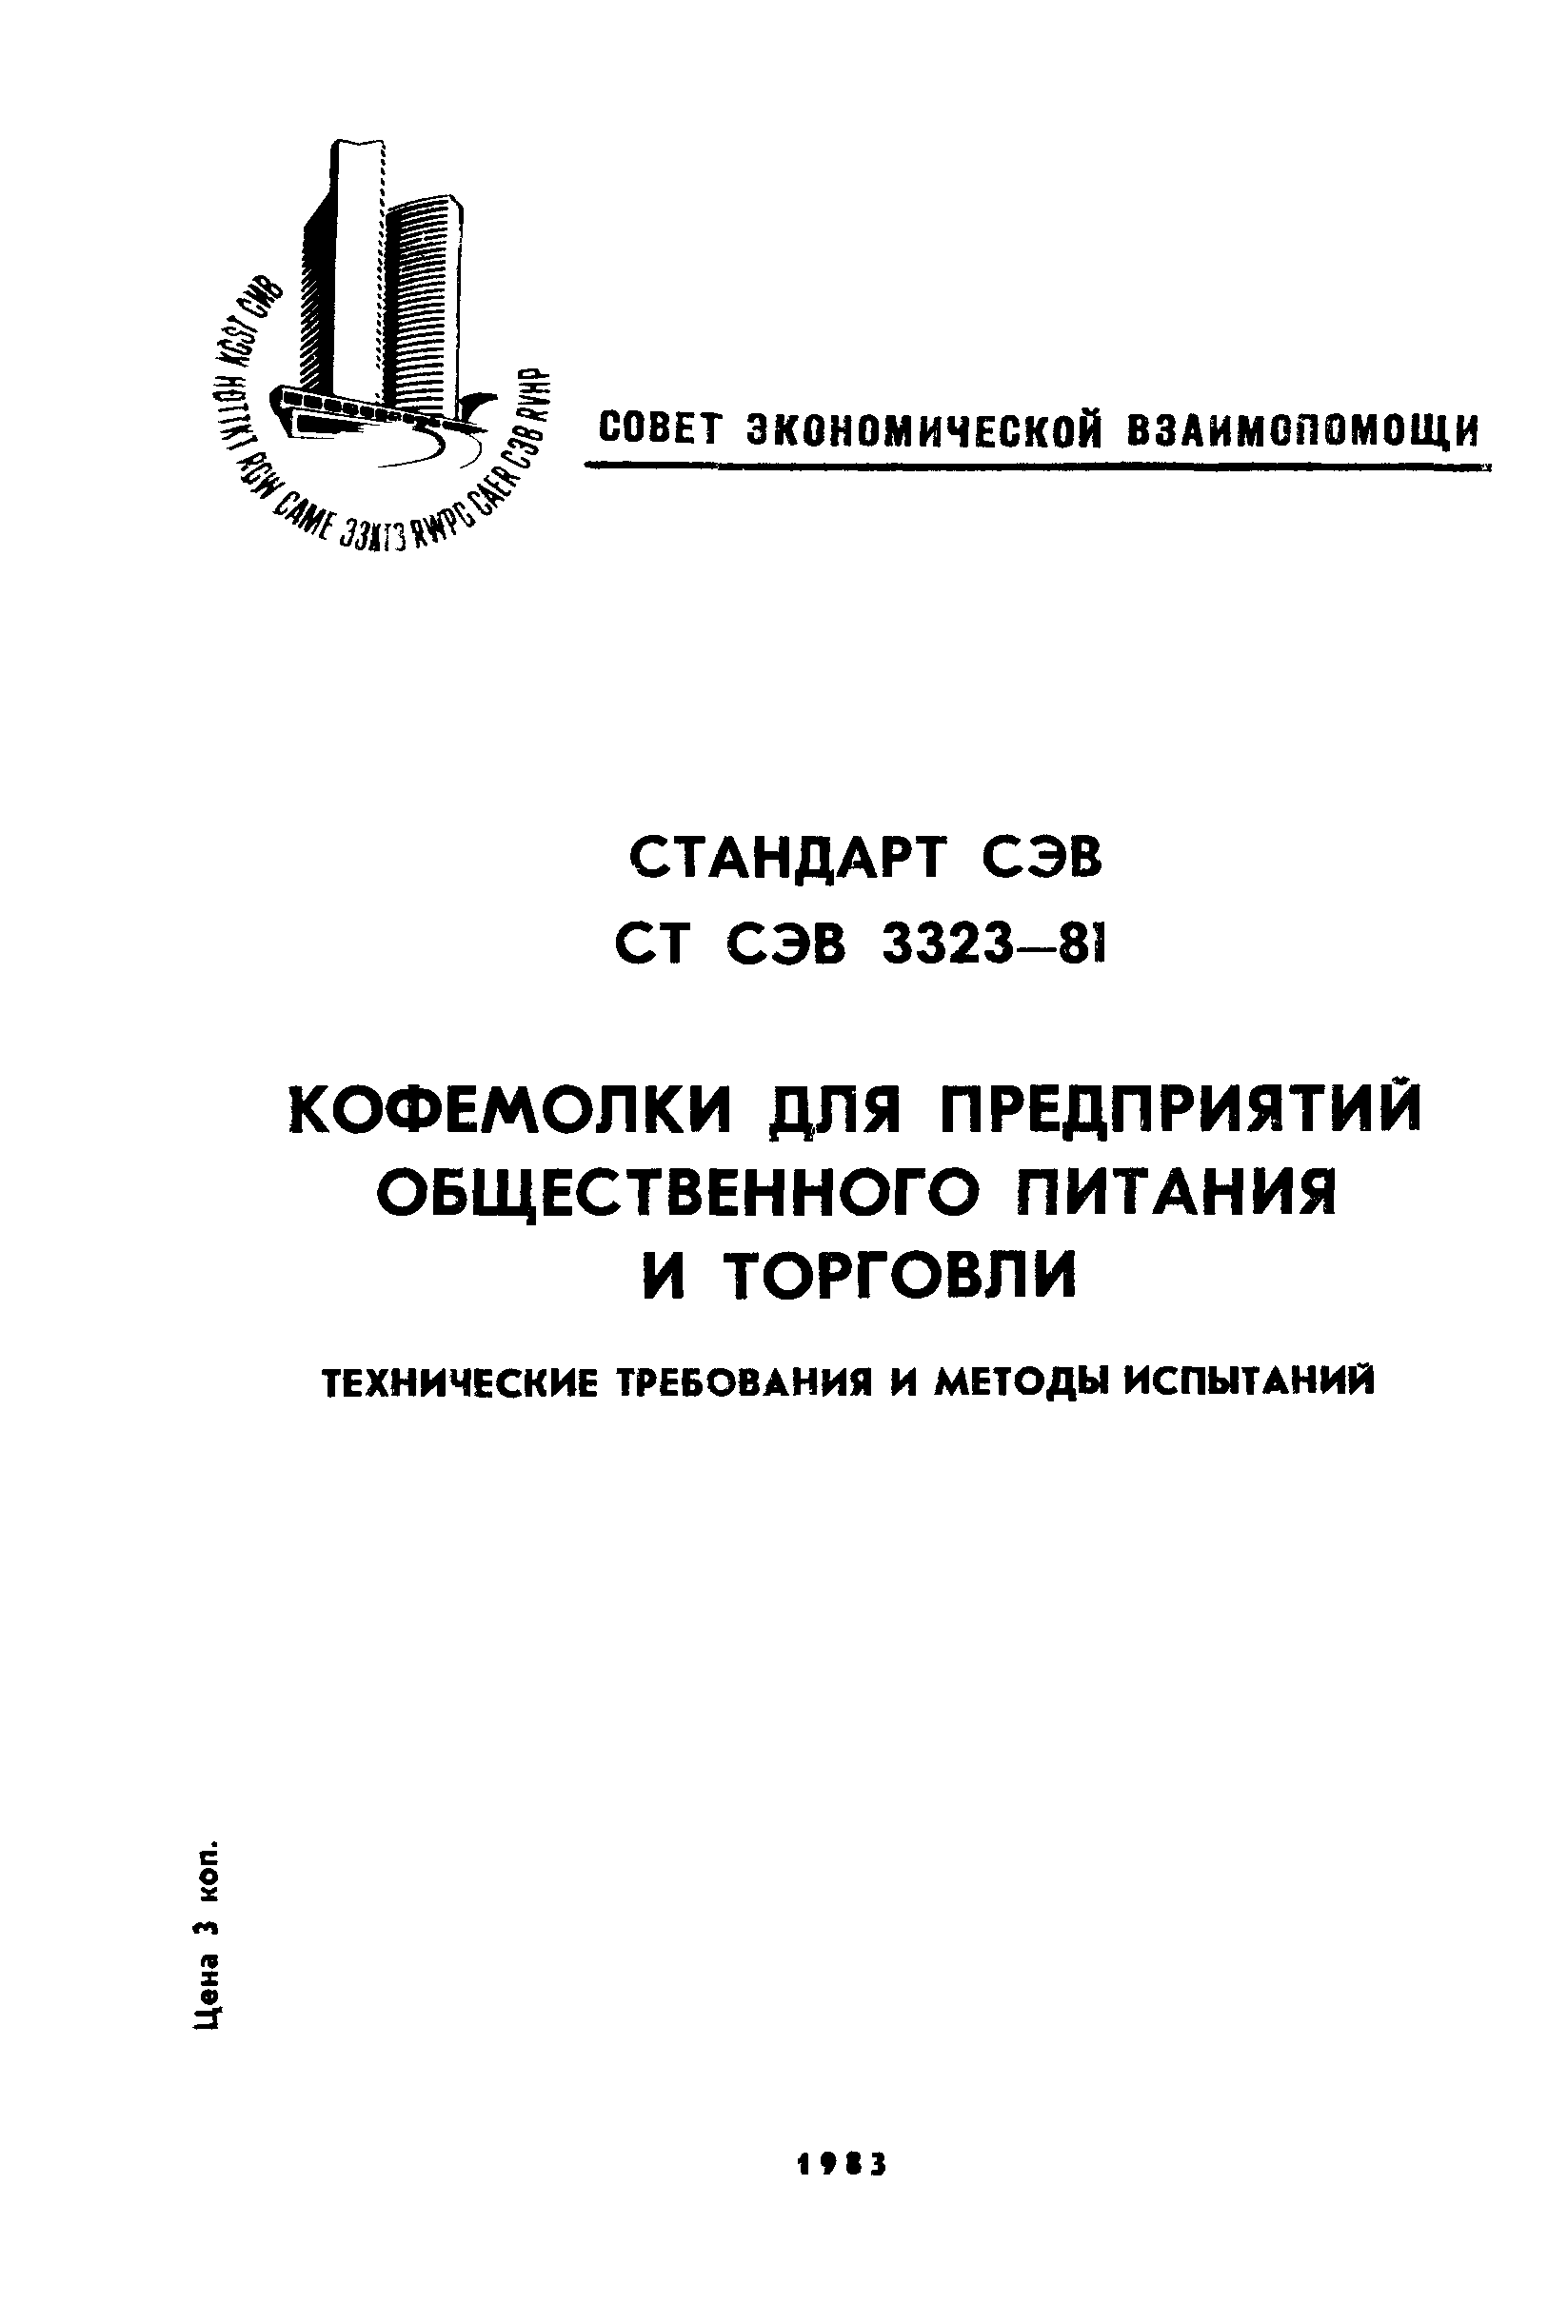 СТ СЭВ 3323-81